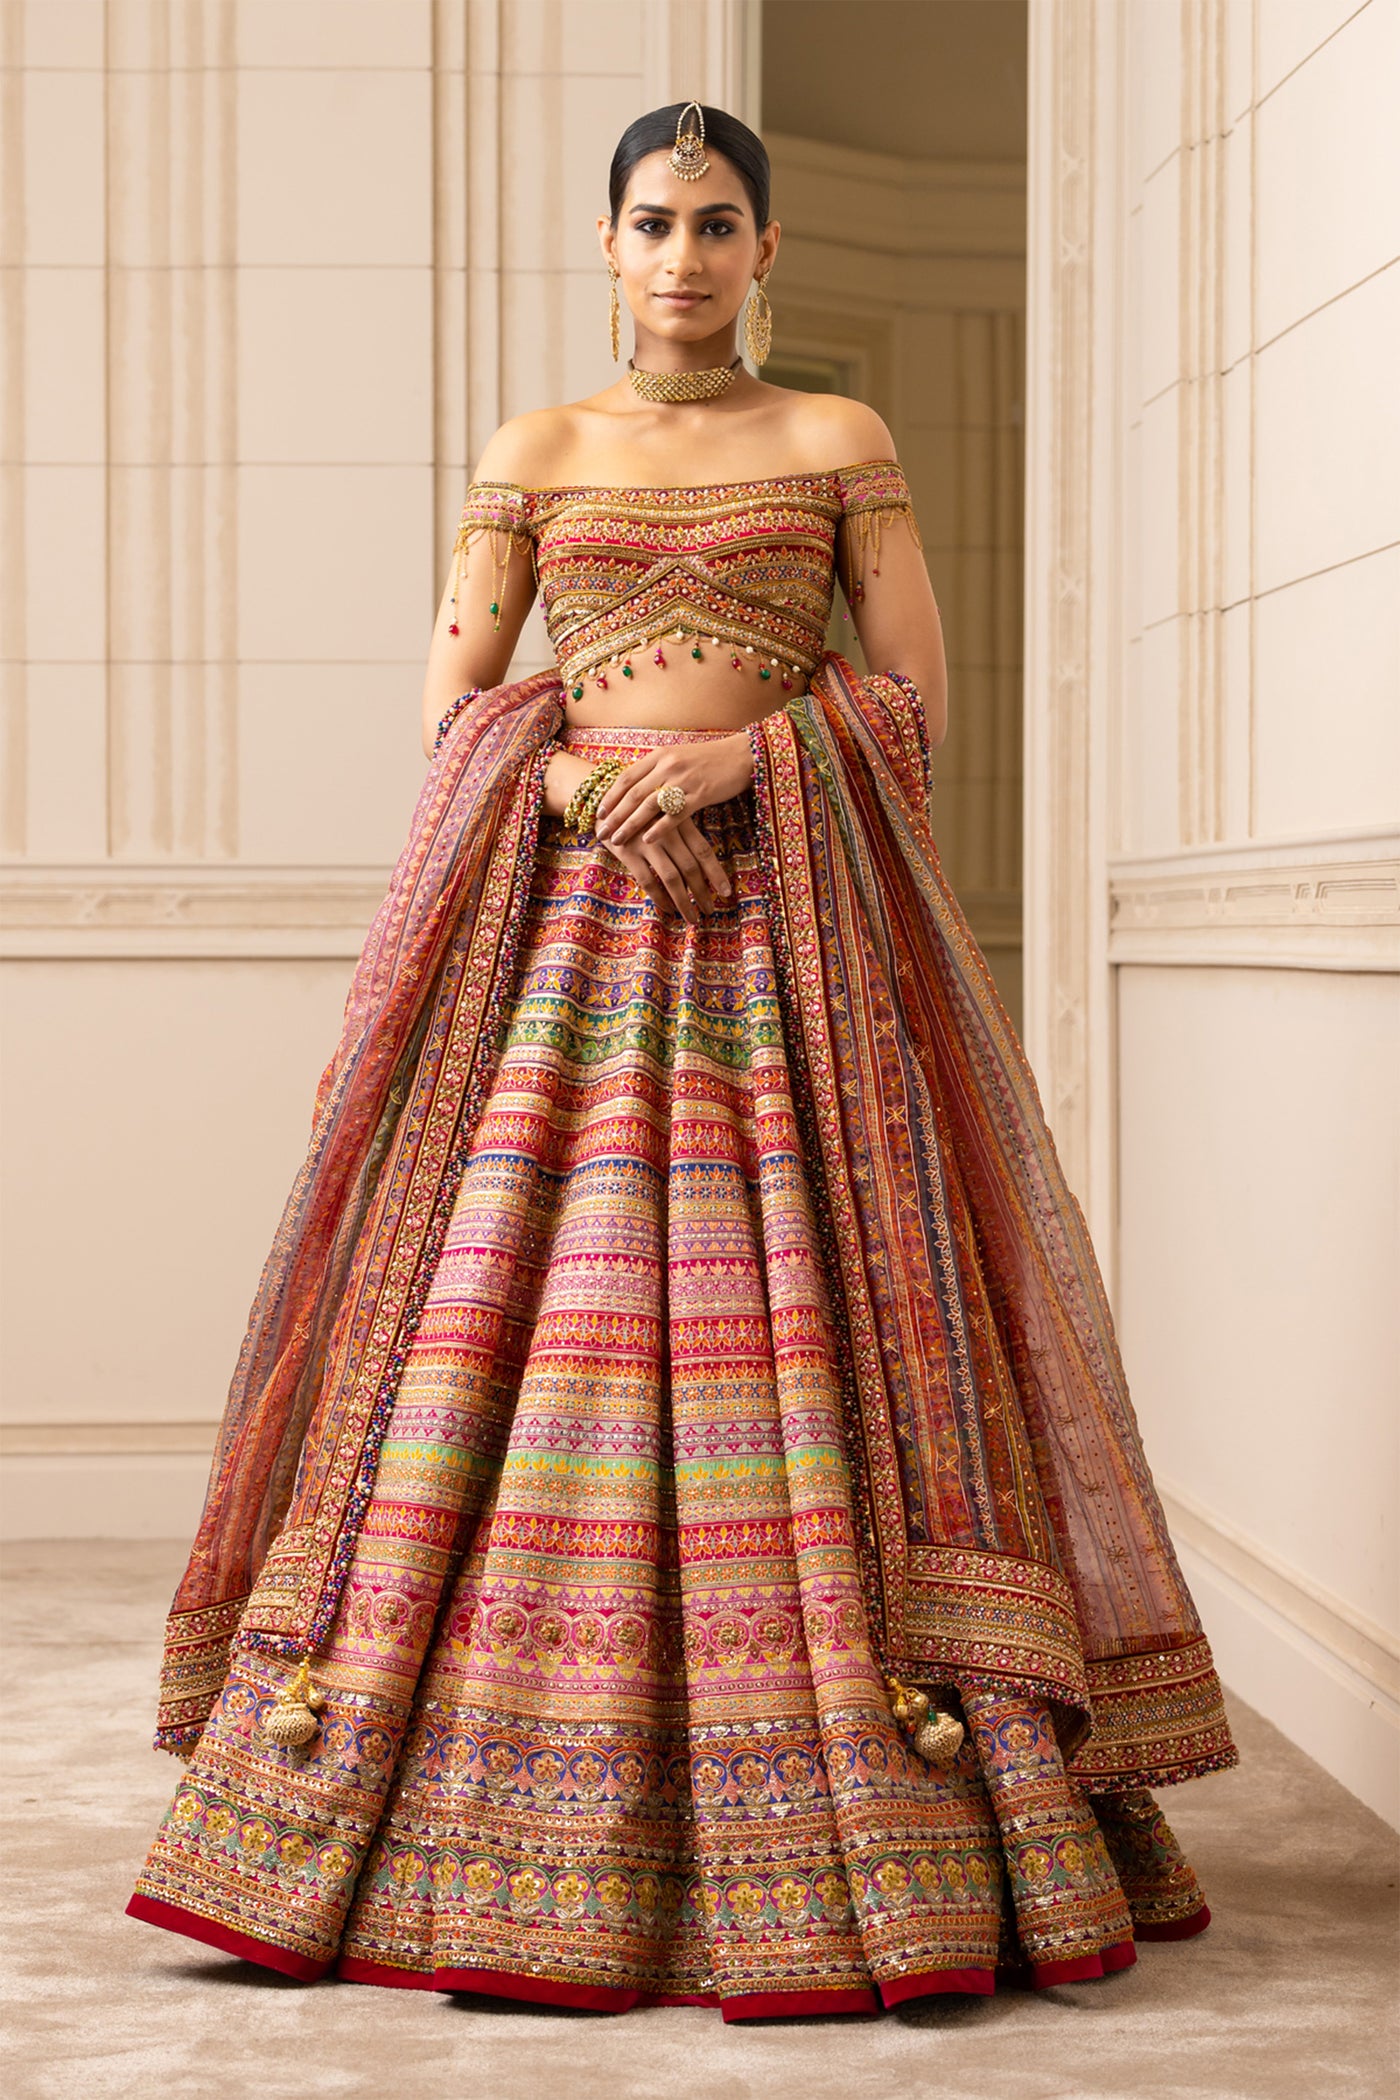 Tarun tahiliani Multicolour Lehenga With Off-Shoulder Blouse wedding bridal indian designer wear online shopping melange singapore